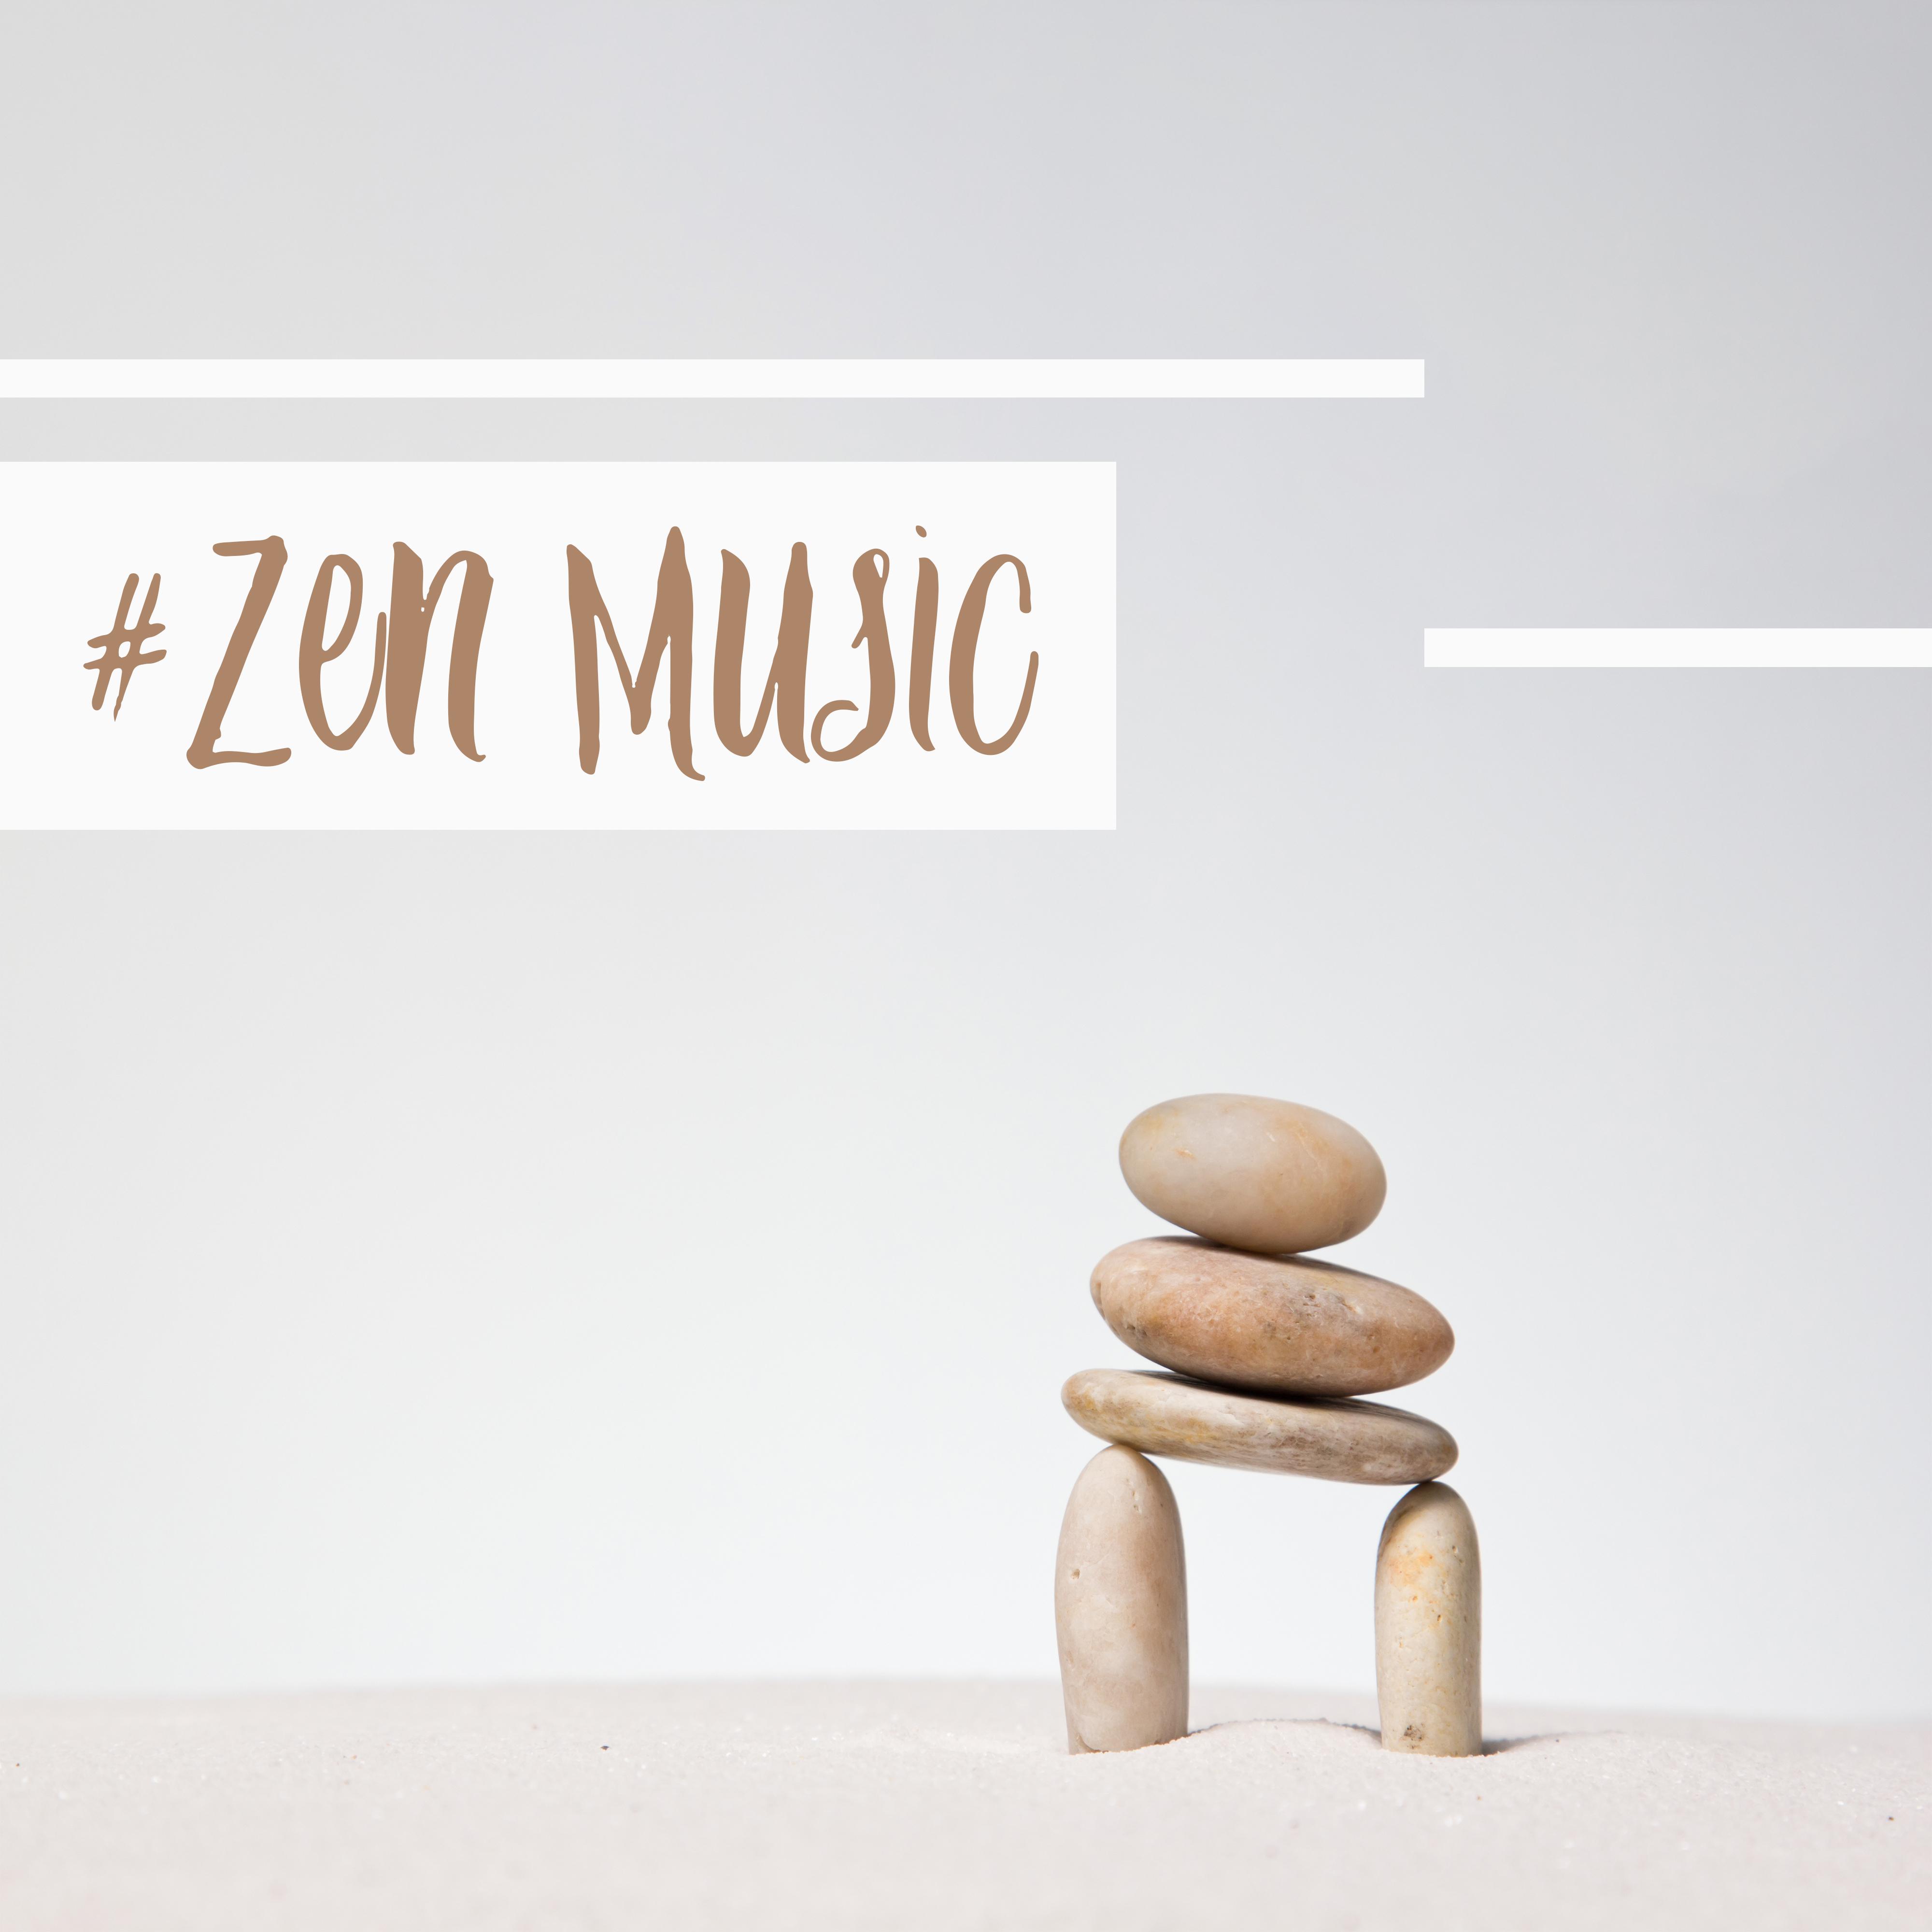 #Zen Music